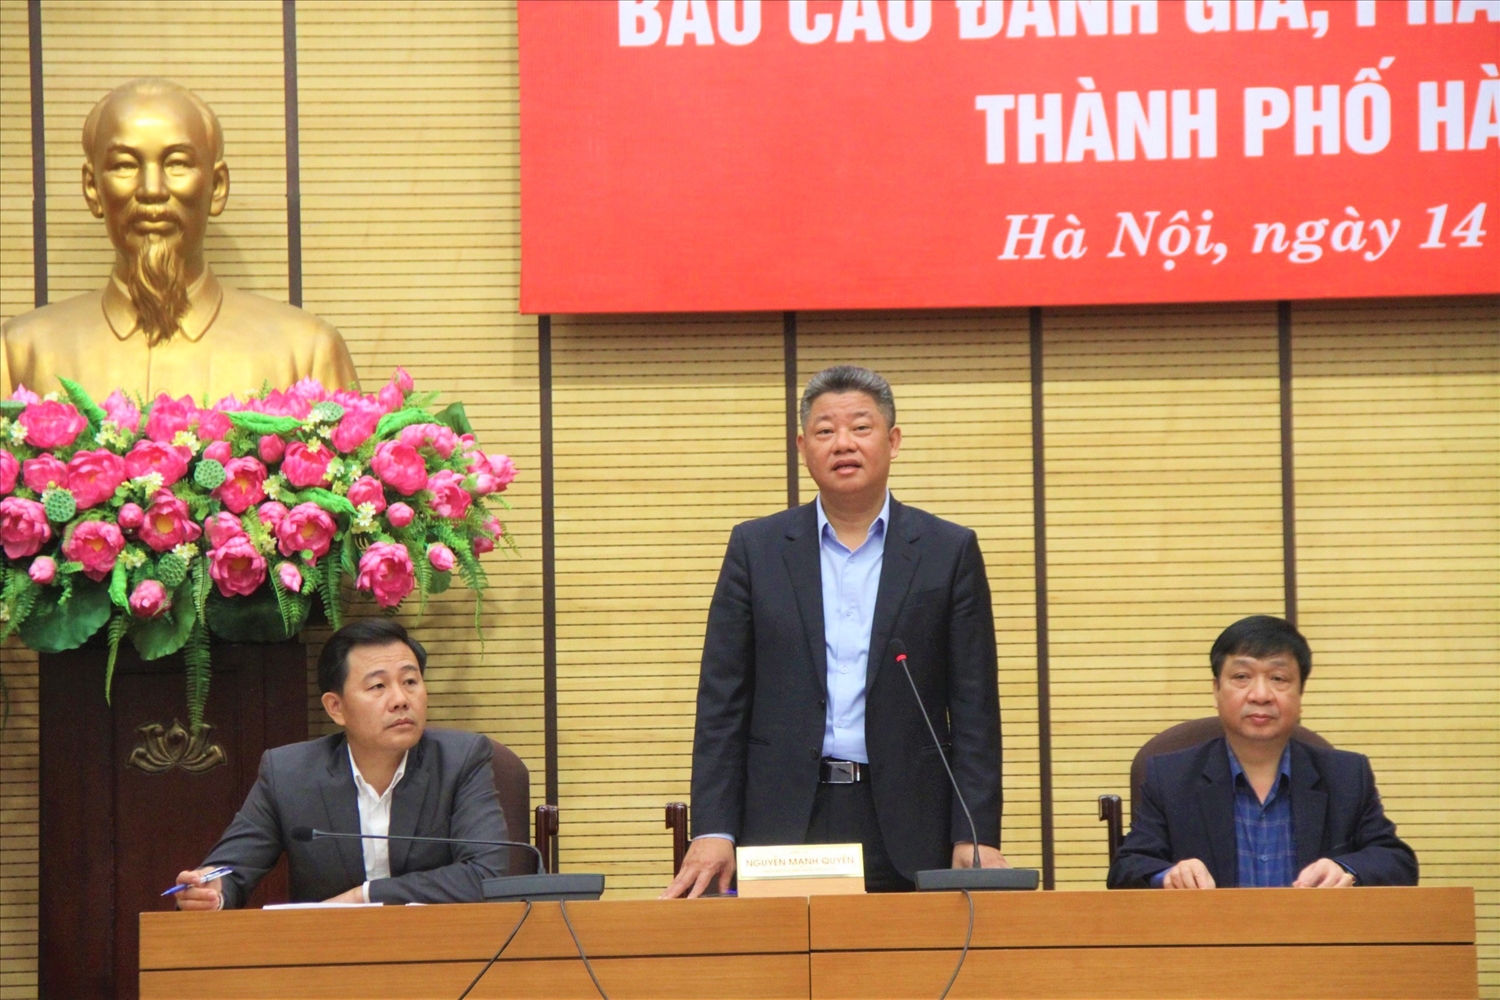 Phó Chủ tịch UBND thành phố Hà Nội Nguyễn Mạnh Quyền phát biểu chỉ đạo tại Hội nghị.